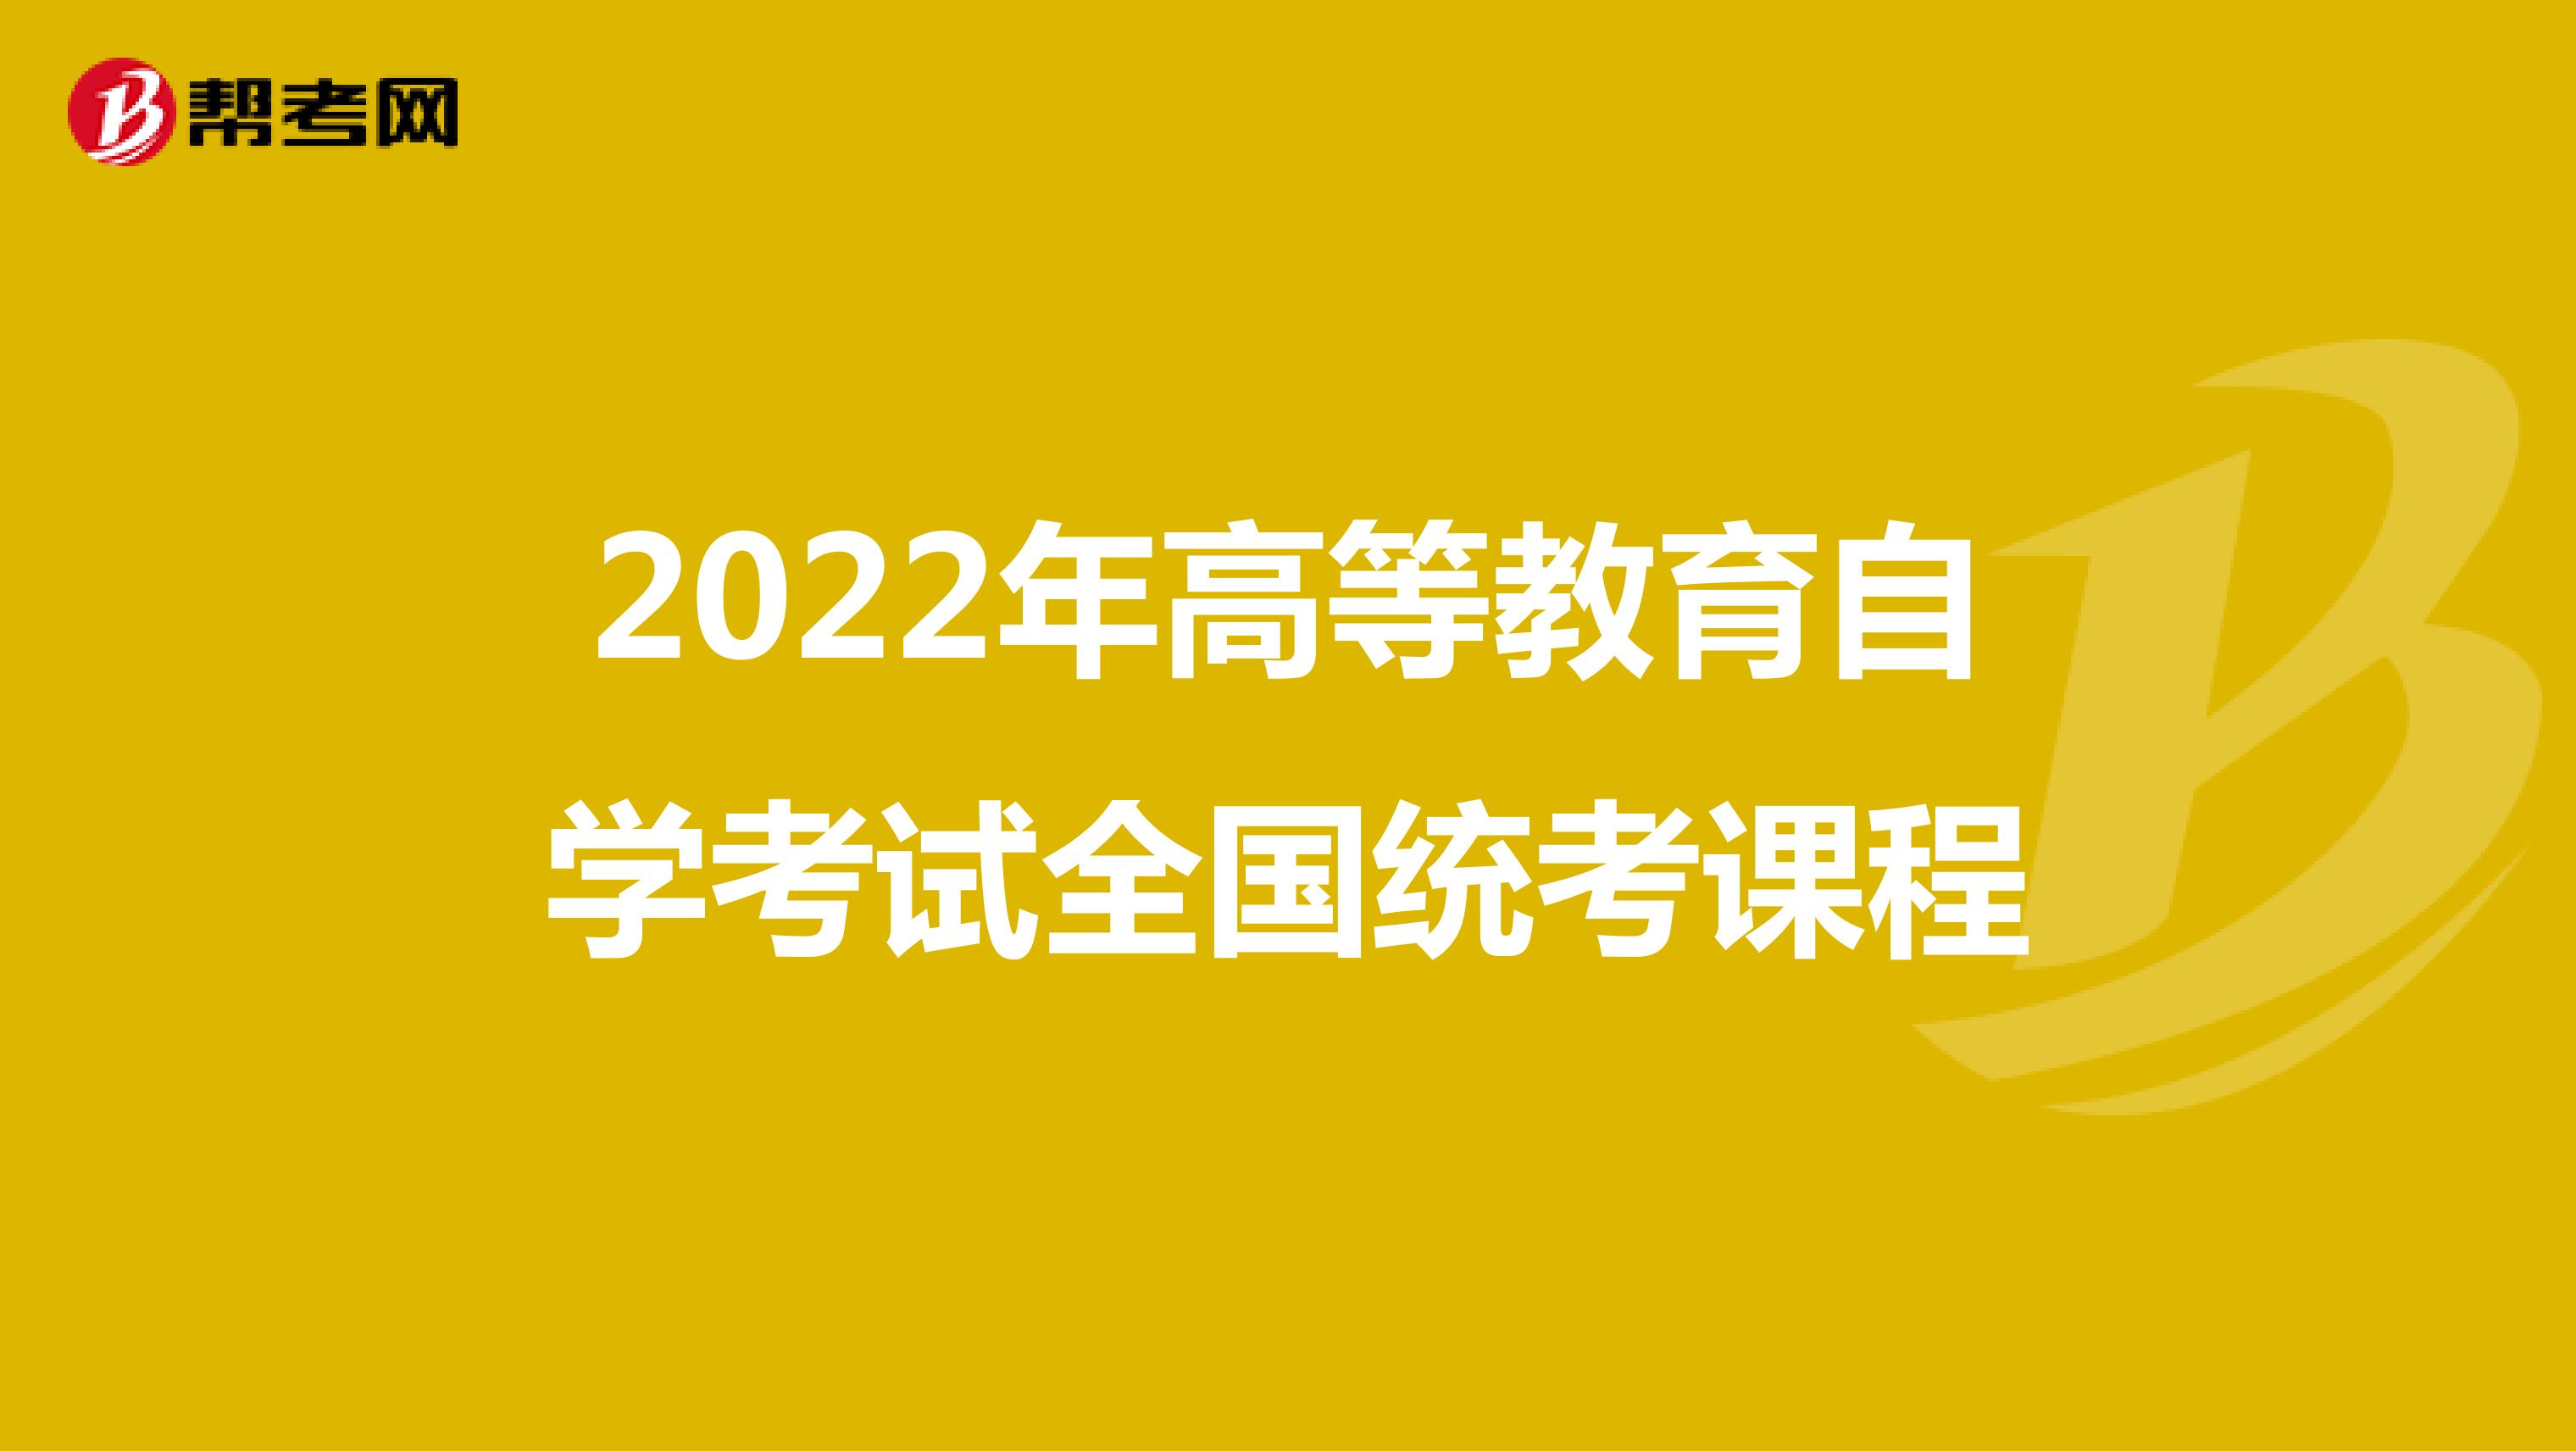 2022年高等教育自学考试全国统考课程